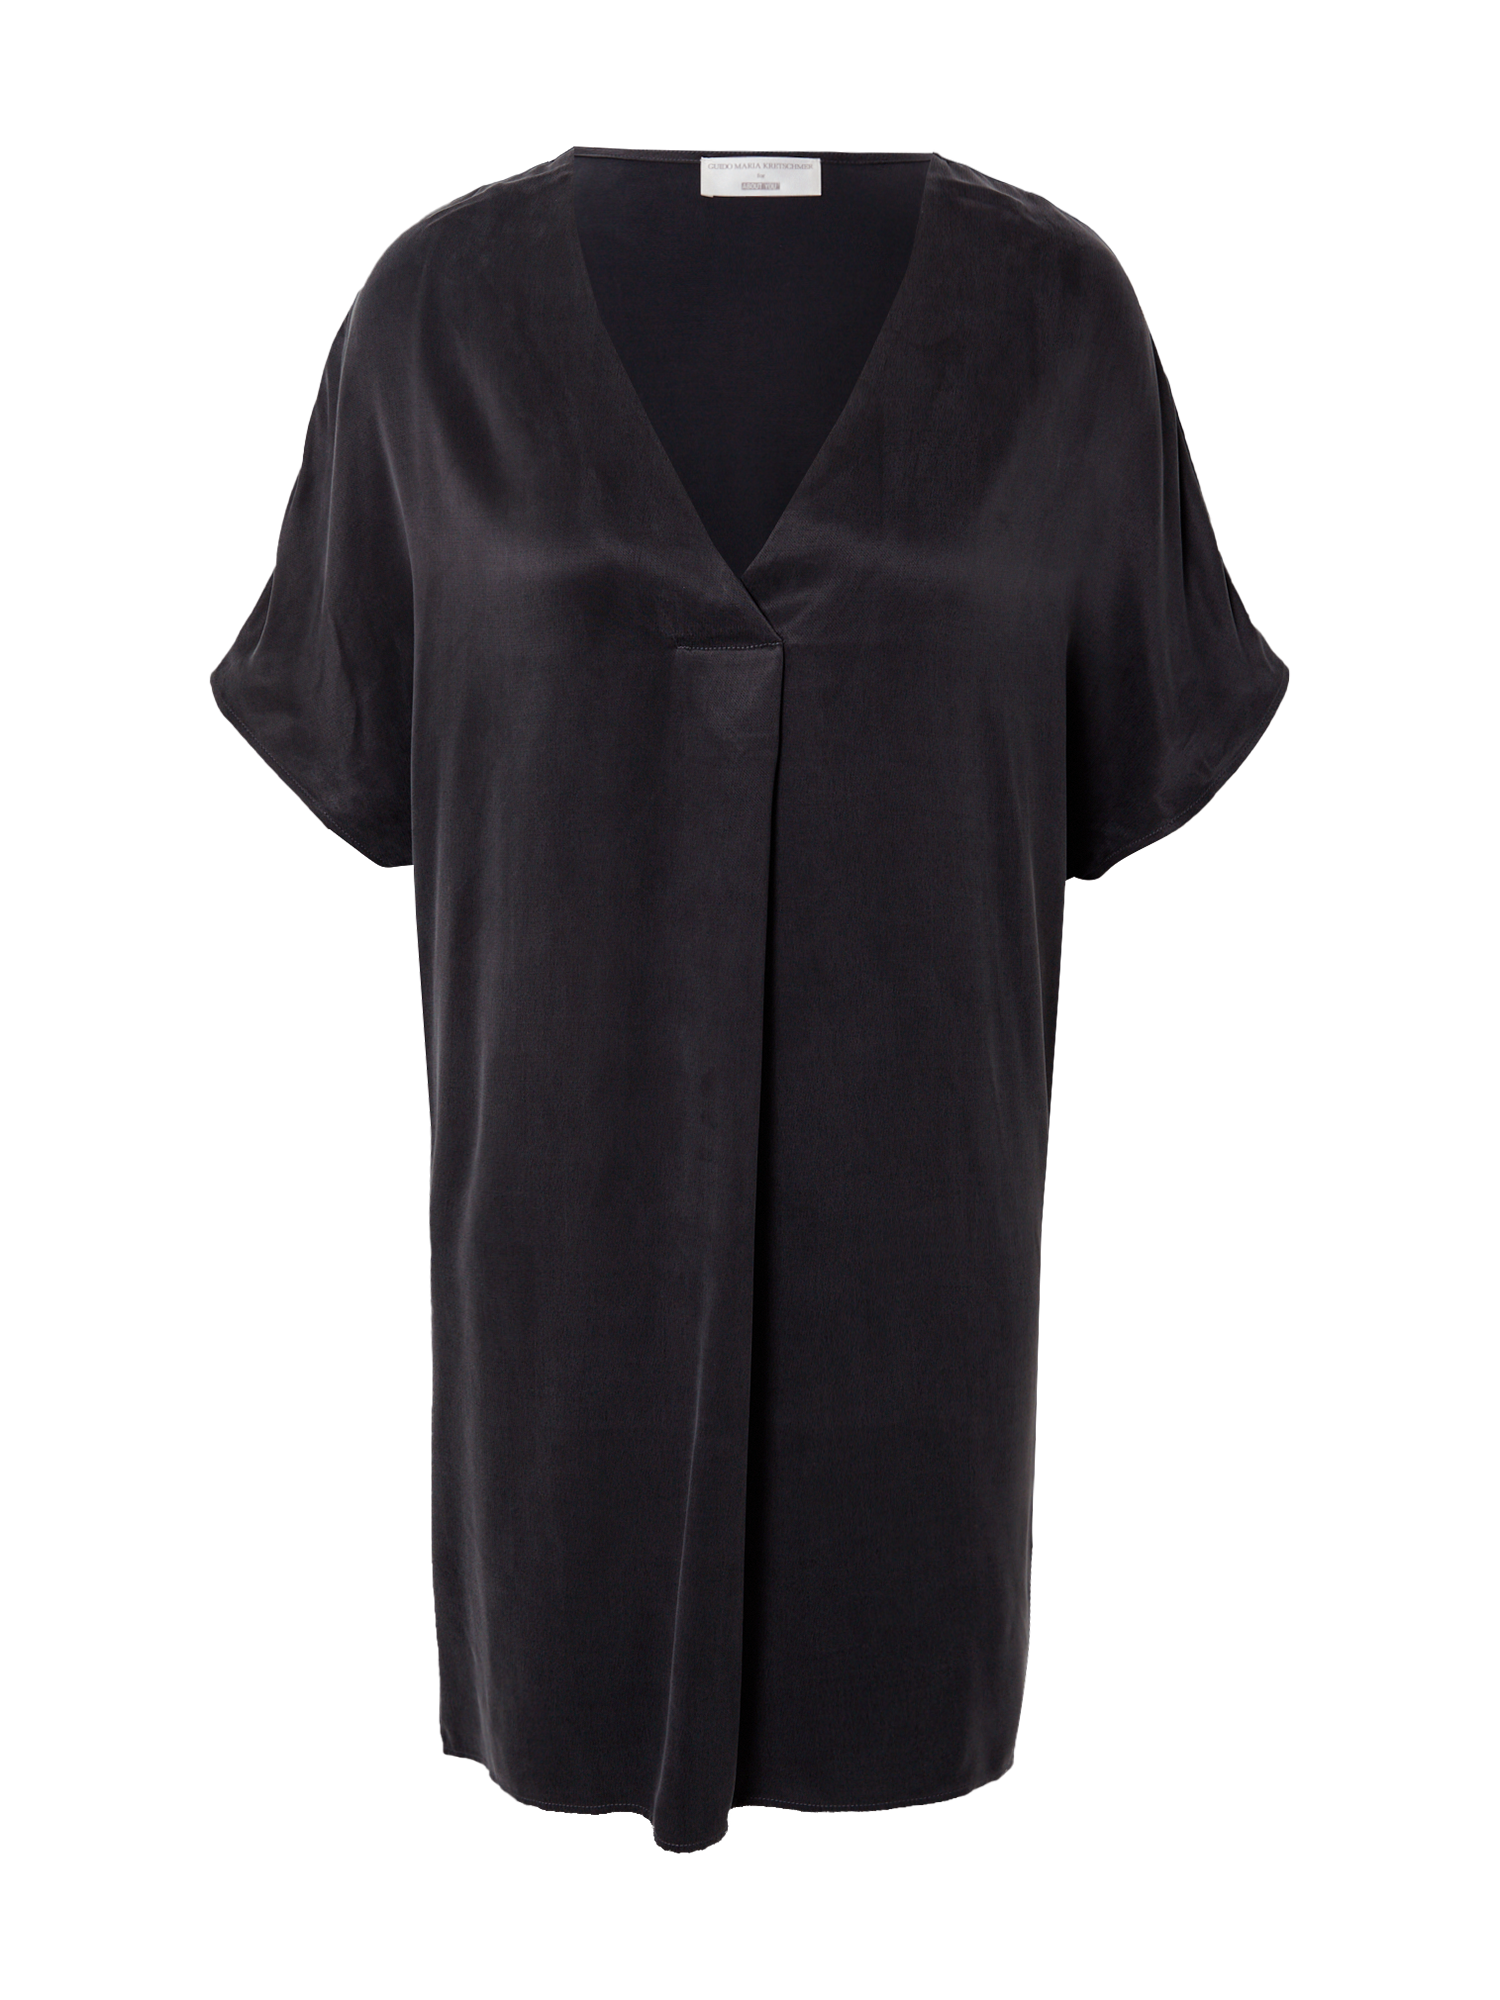 Odzież 2ryct Guido Maria Kretschmer Collection Sukienka Michelle w kolorze Czarnym 